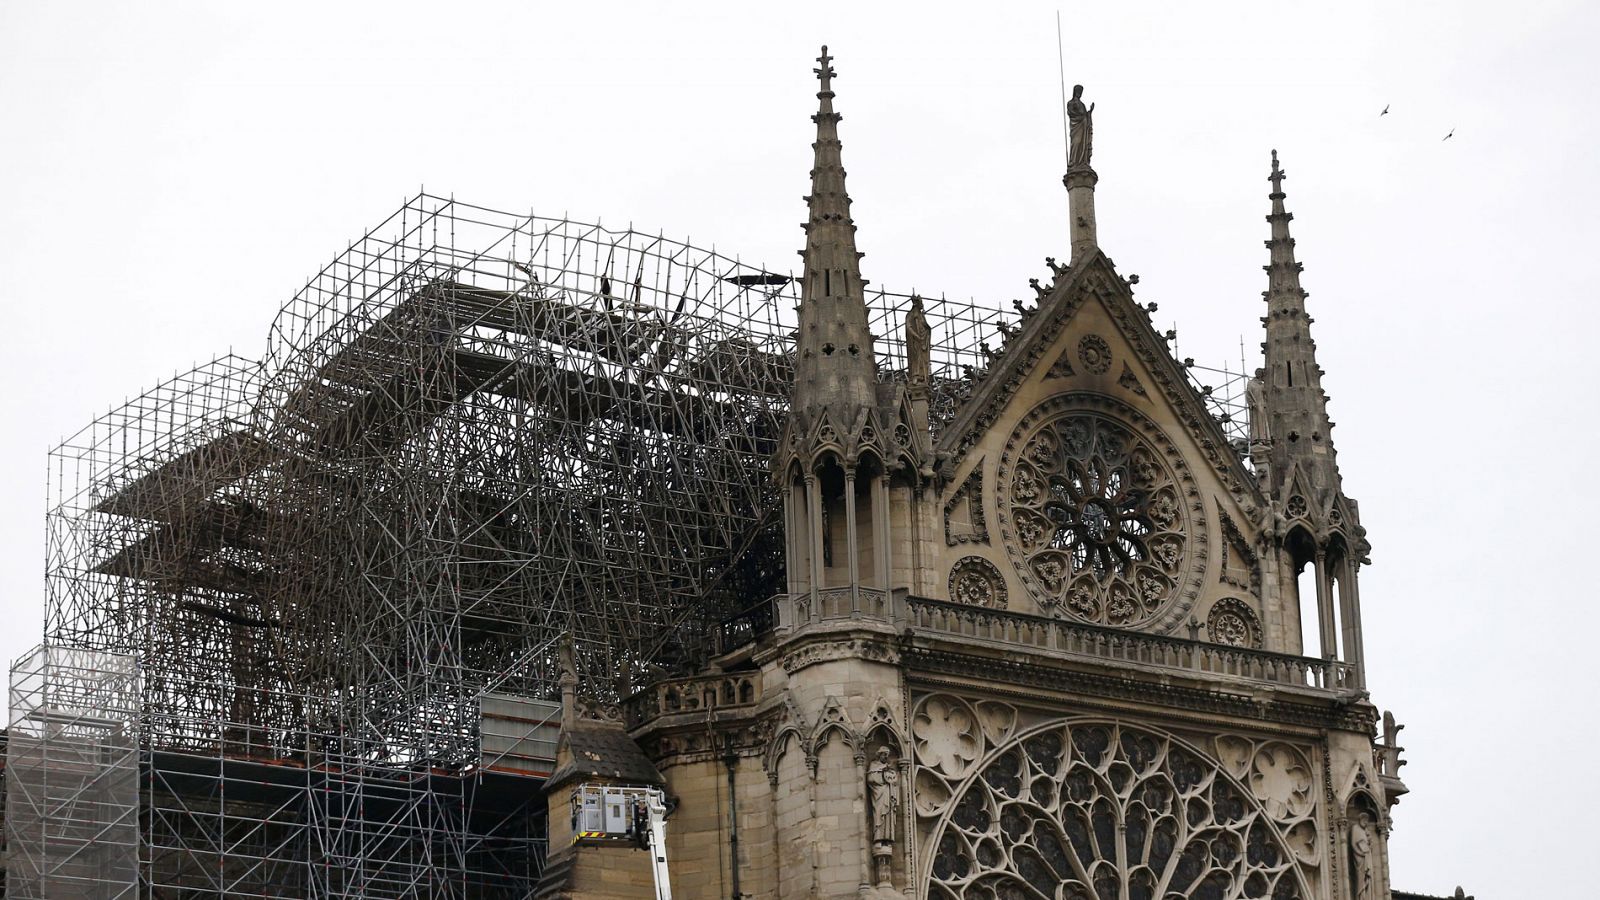 Vista de parte de la estructura la catedral de Notre Dame afectada por un incendio en París Francia